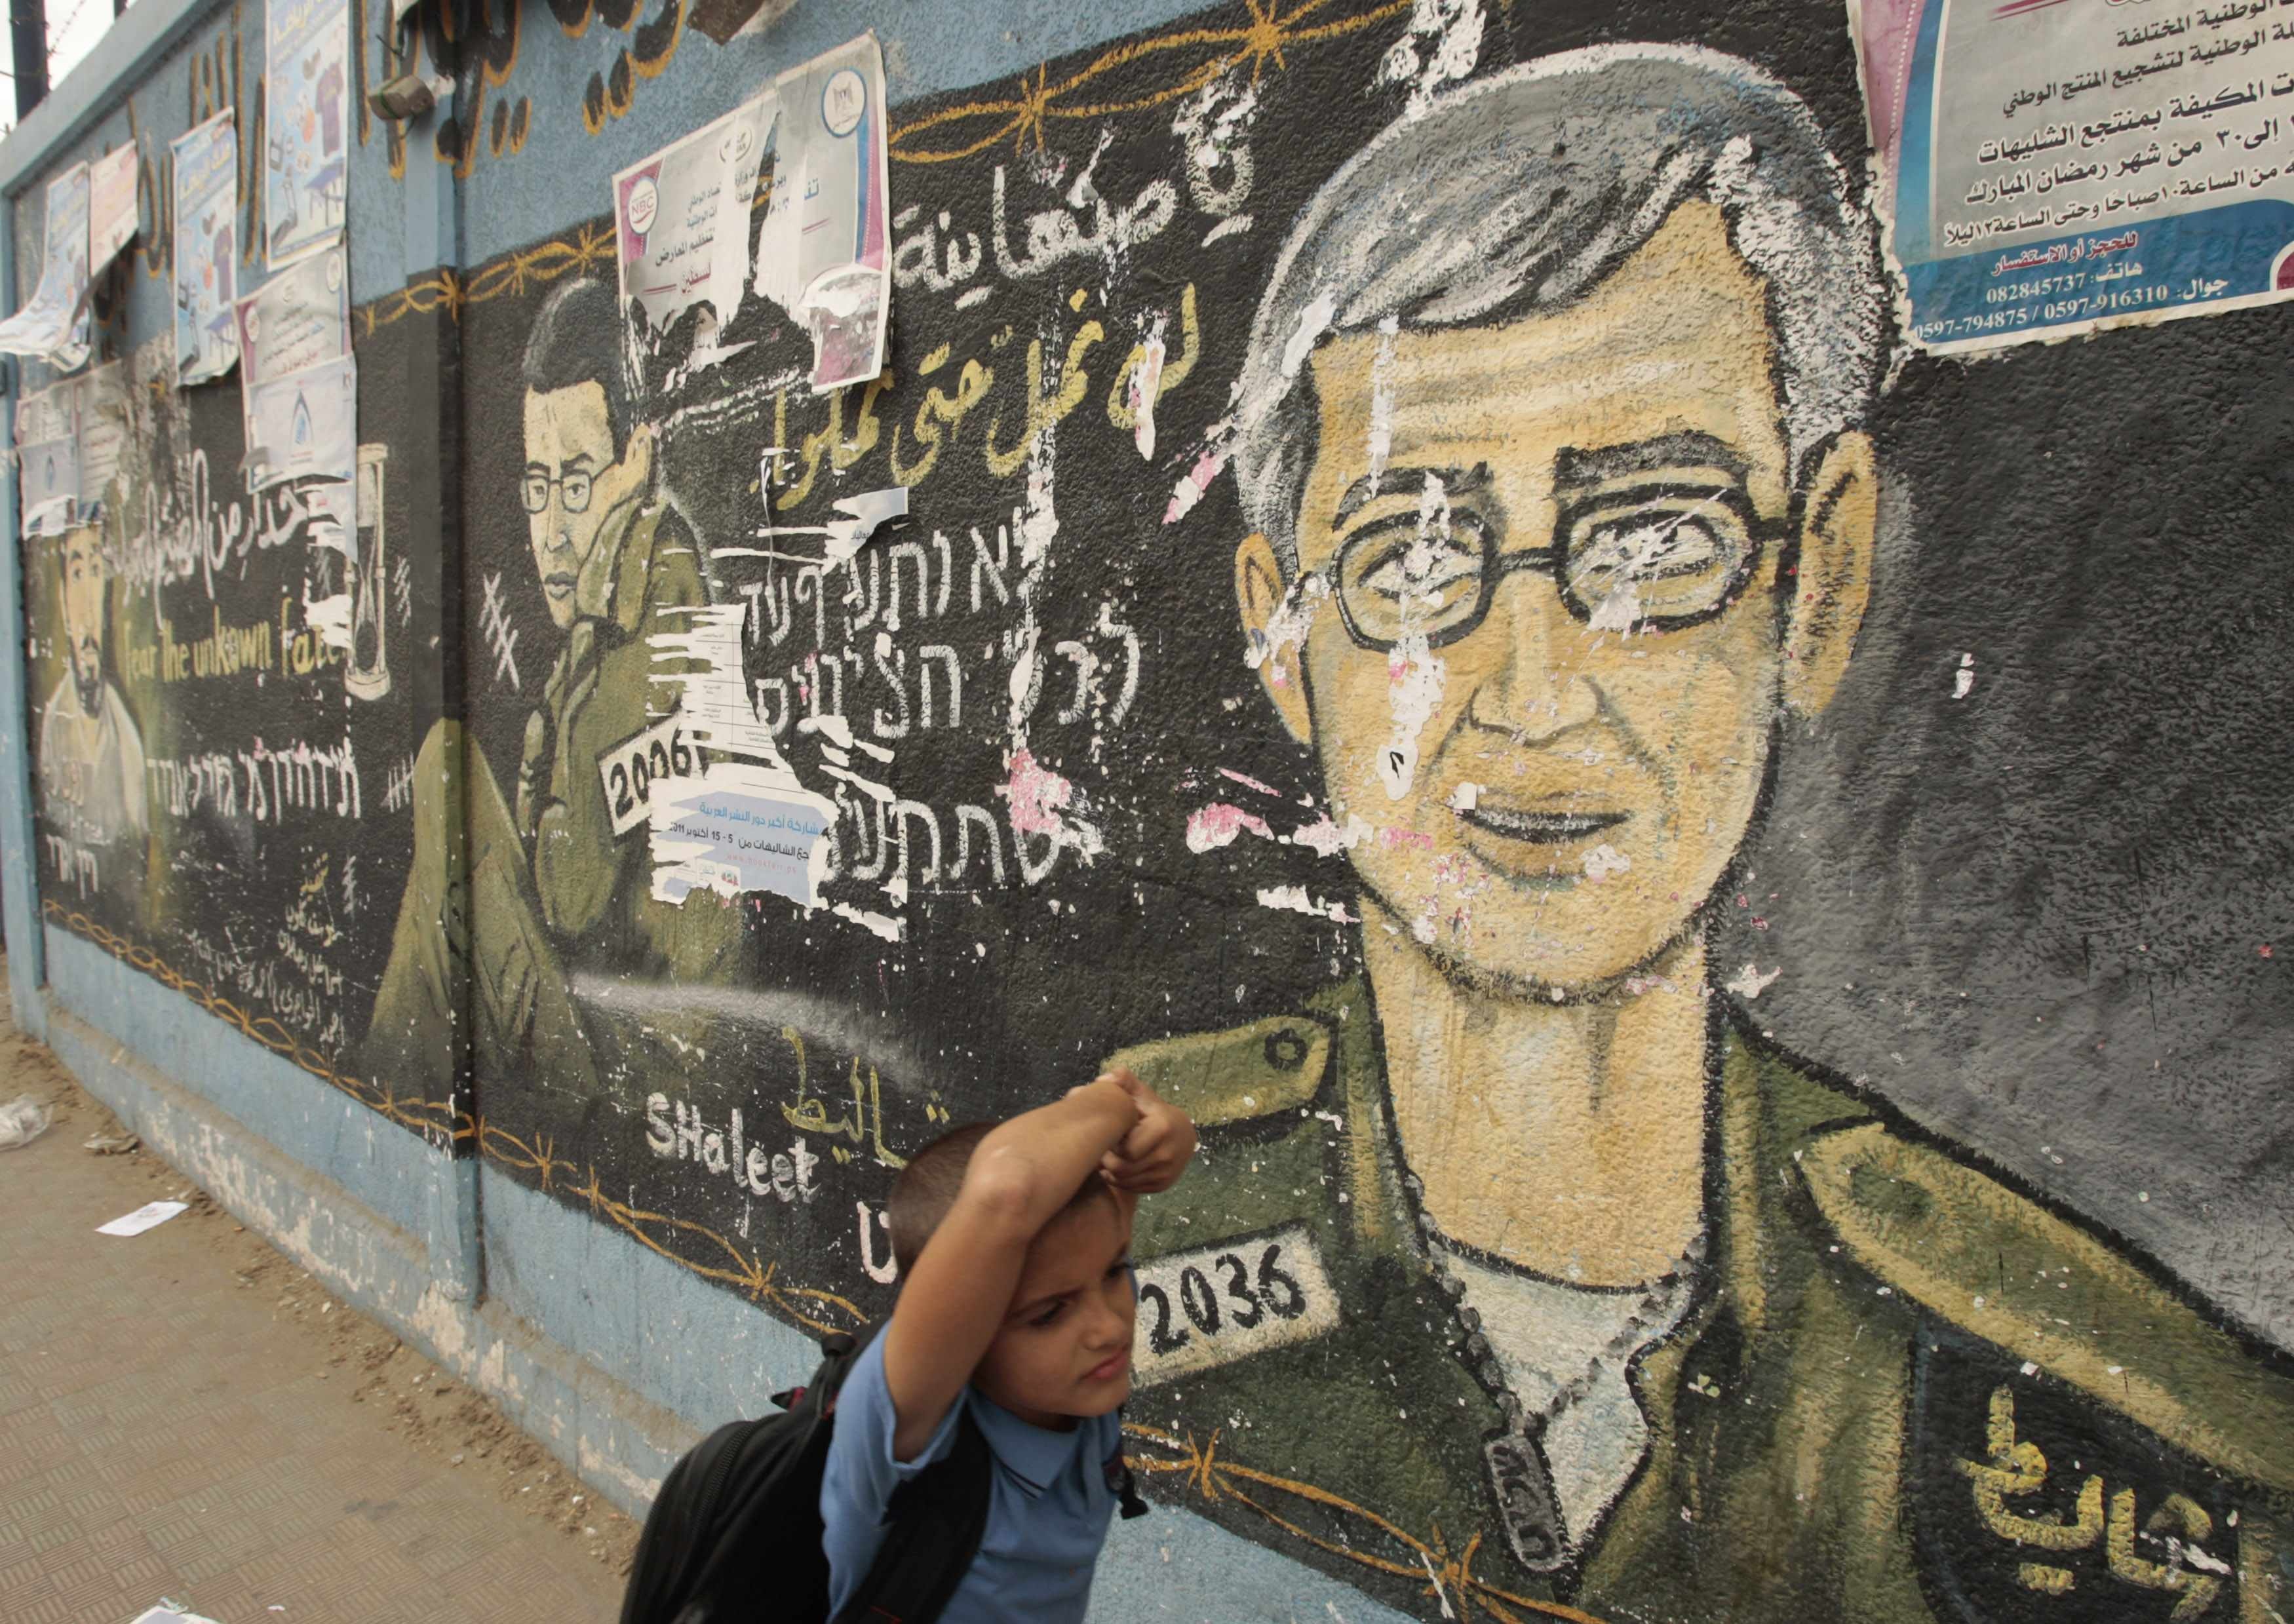 Σκίτσο του νεαρού στρατιώτη που κρατείται στη Γάζα